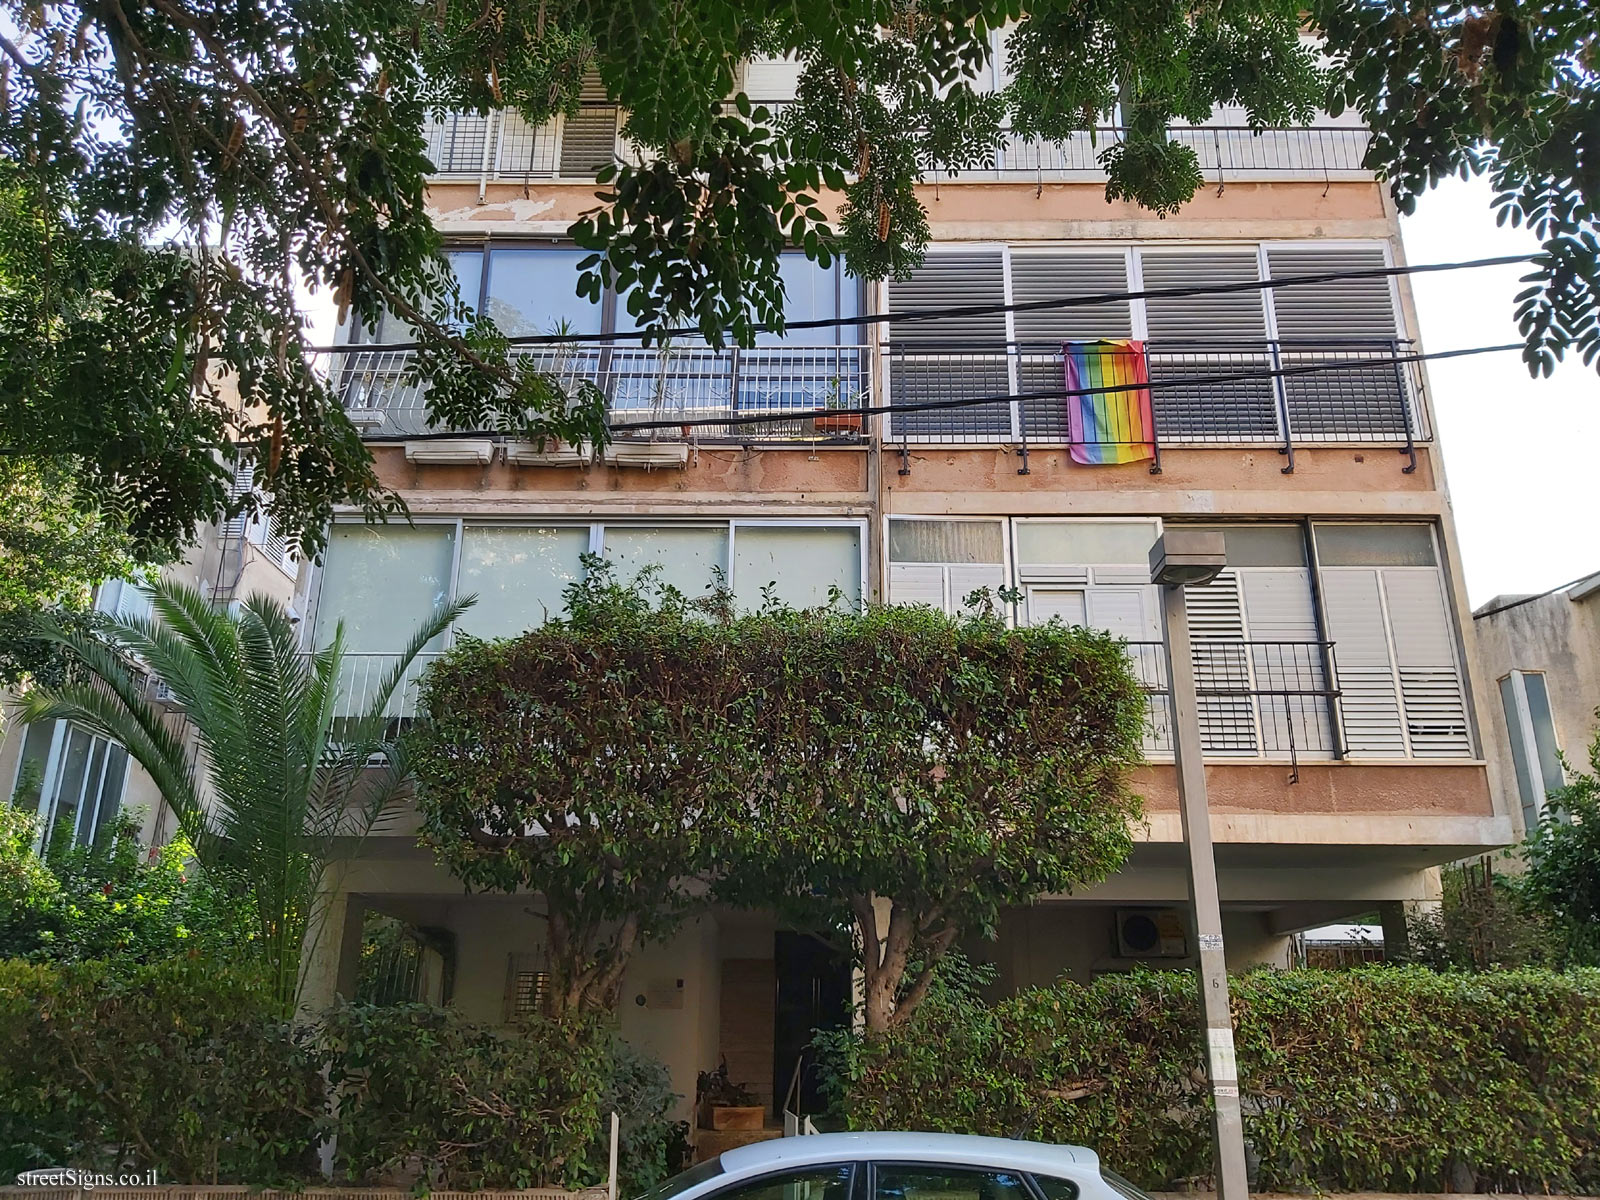 The house of Paul Kor - Feierberg St 8, Tel Aviv-Yafo, Israel